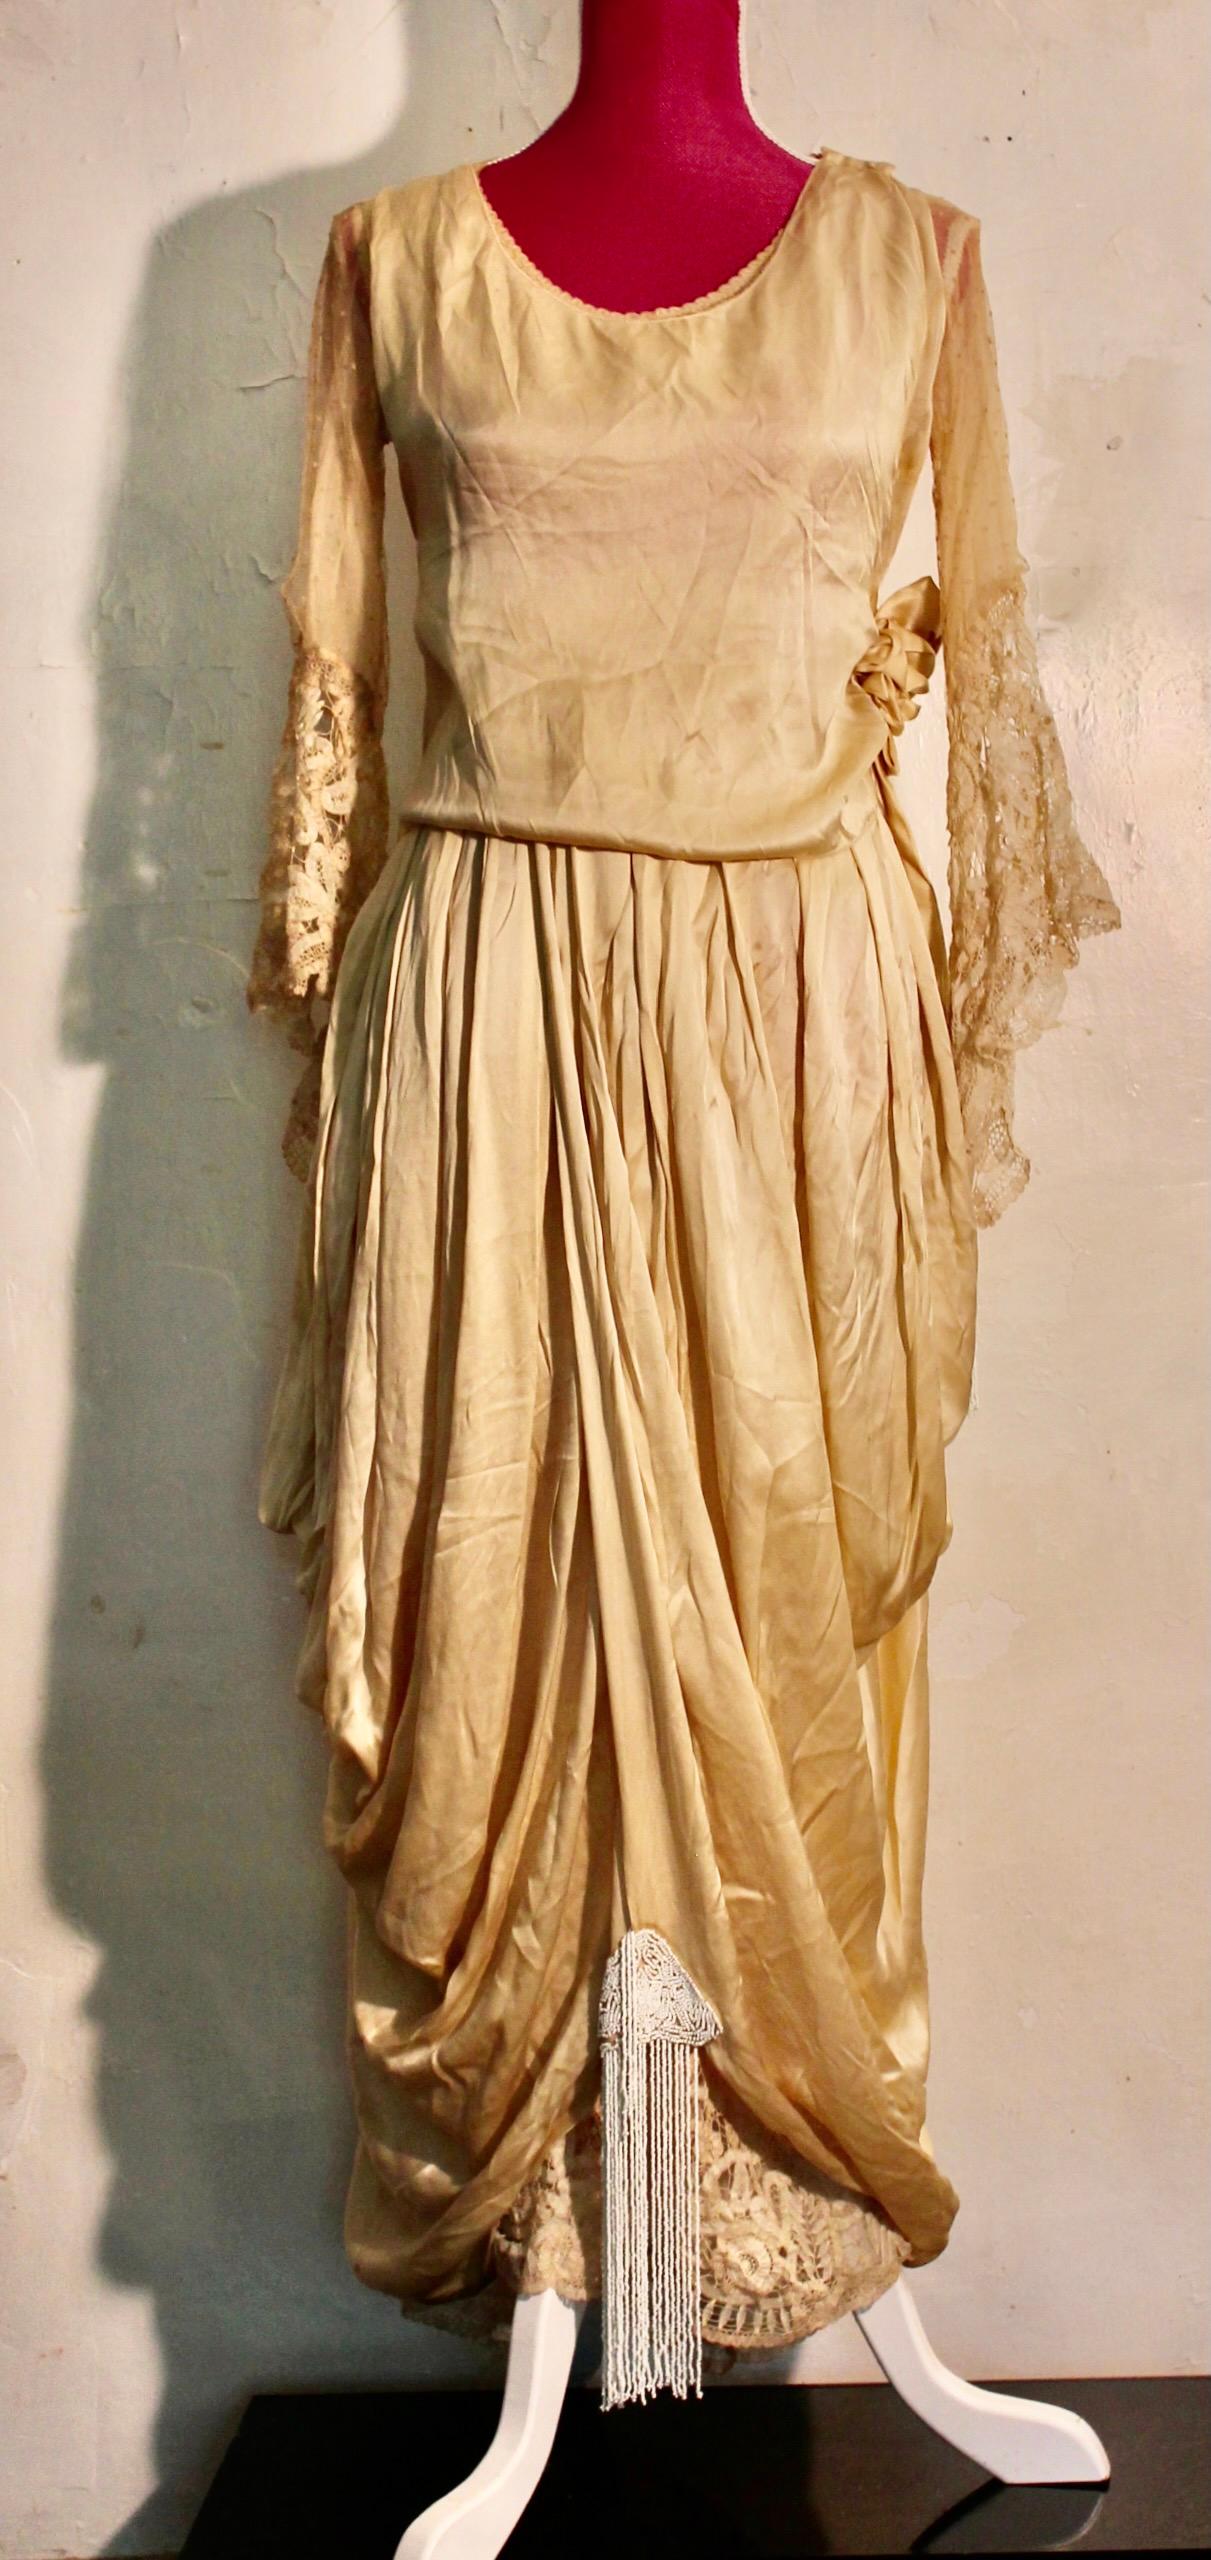 Kleid aus ecrufarbenem Seidensatin mit Brüsseler Spitze und gepunktetem Tüll an den Ärmeln sowie mit Perlenquasten an den Ärmeln und am unteren Teil des Kleides.